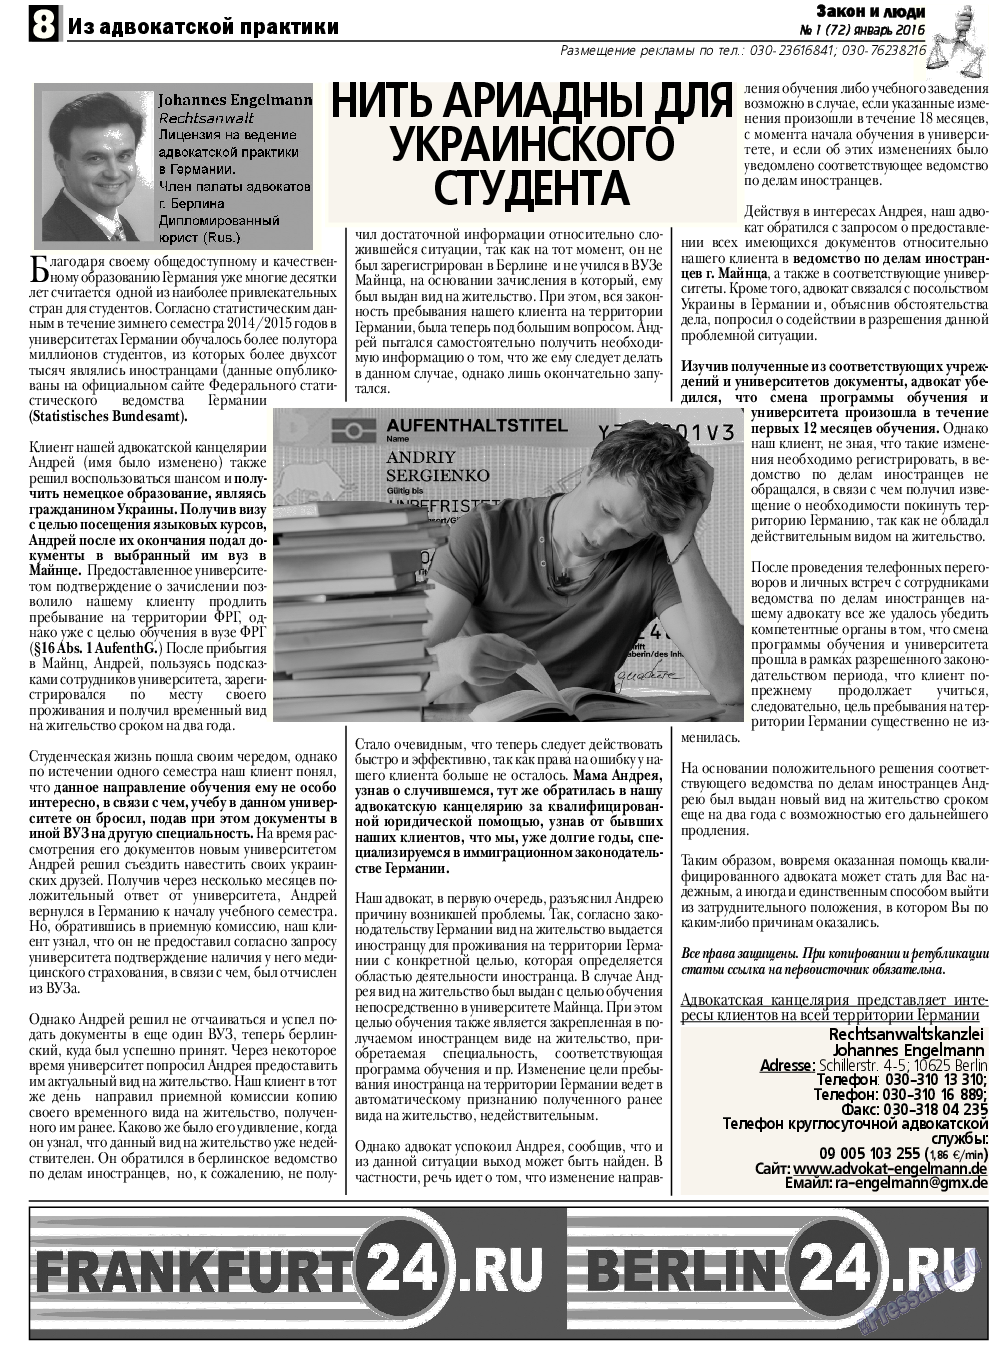 Закон и люди, газета. 2016 №1 стр.8